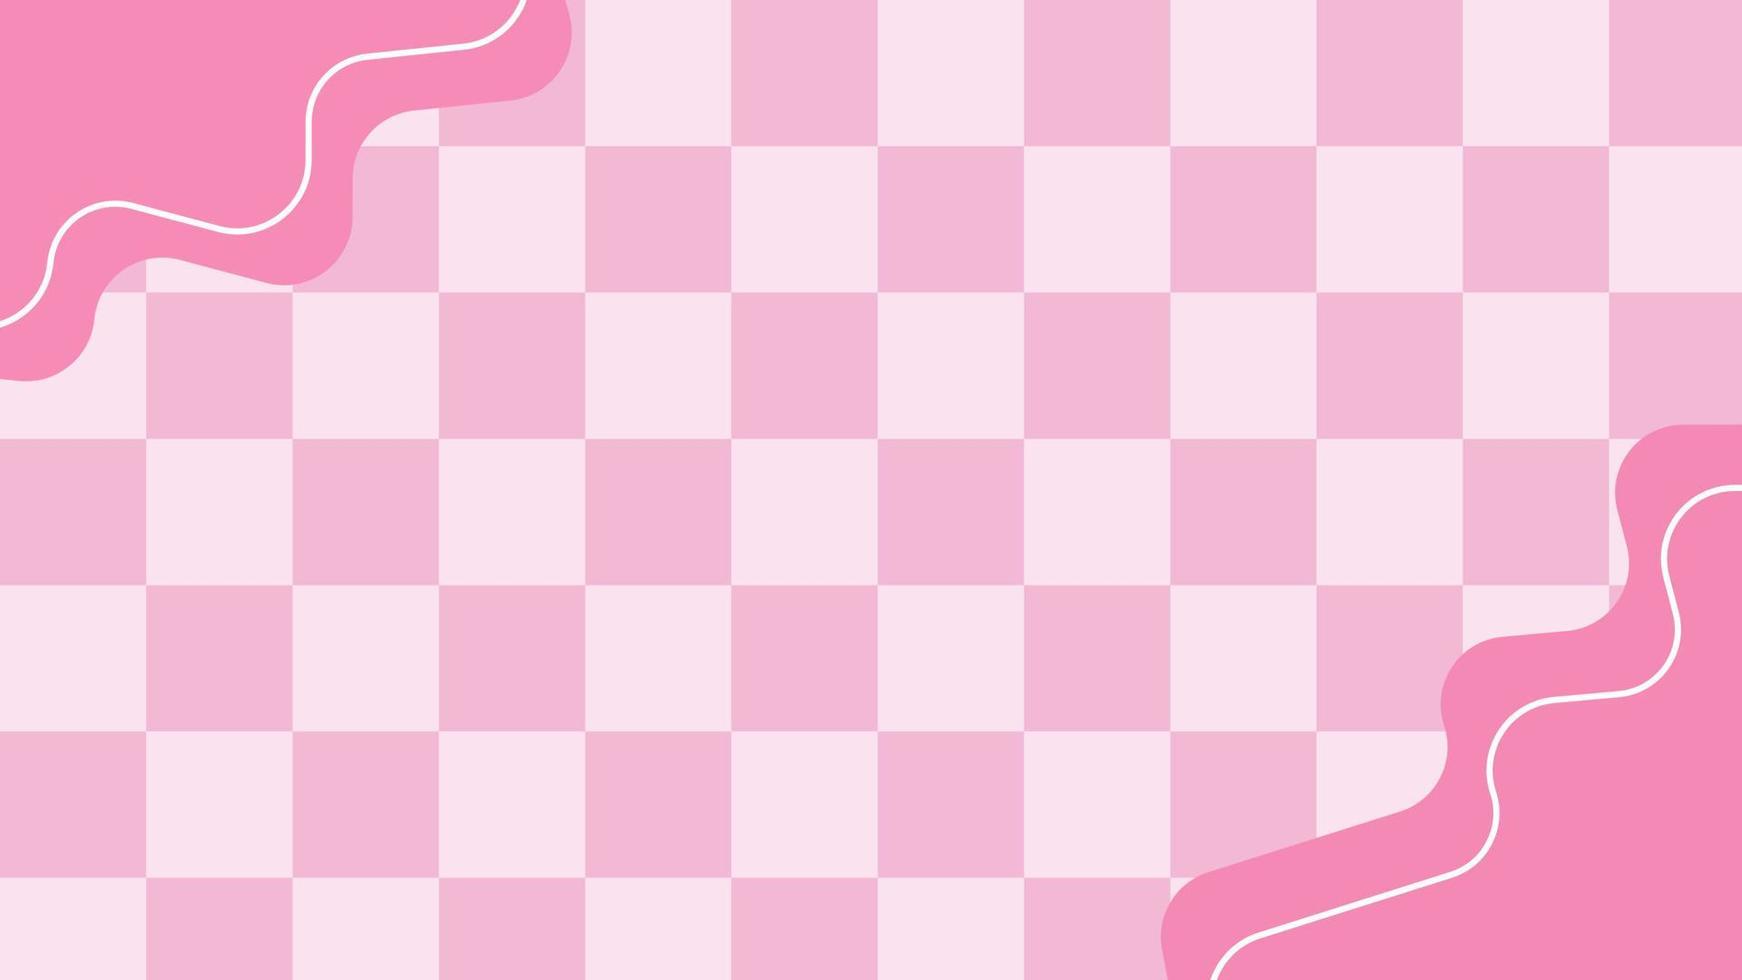 ästhetische minimale rosa Checker, Gingham, Plaid, Schachbrettrahmentapetenillustration, vervollkommnen für Tapete, Hintergrund, Postkarte, Hintergrund vektor